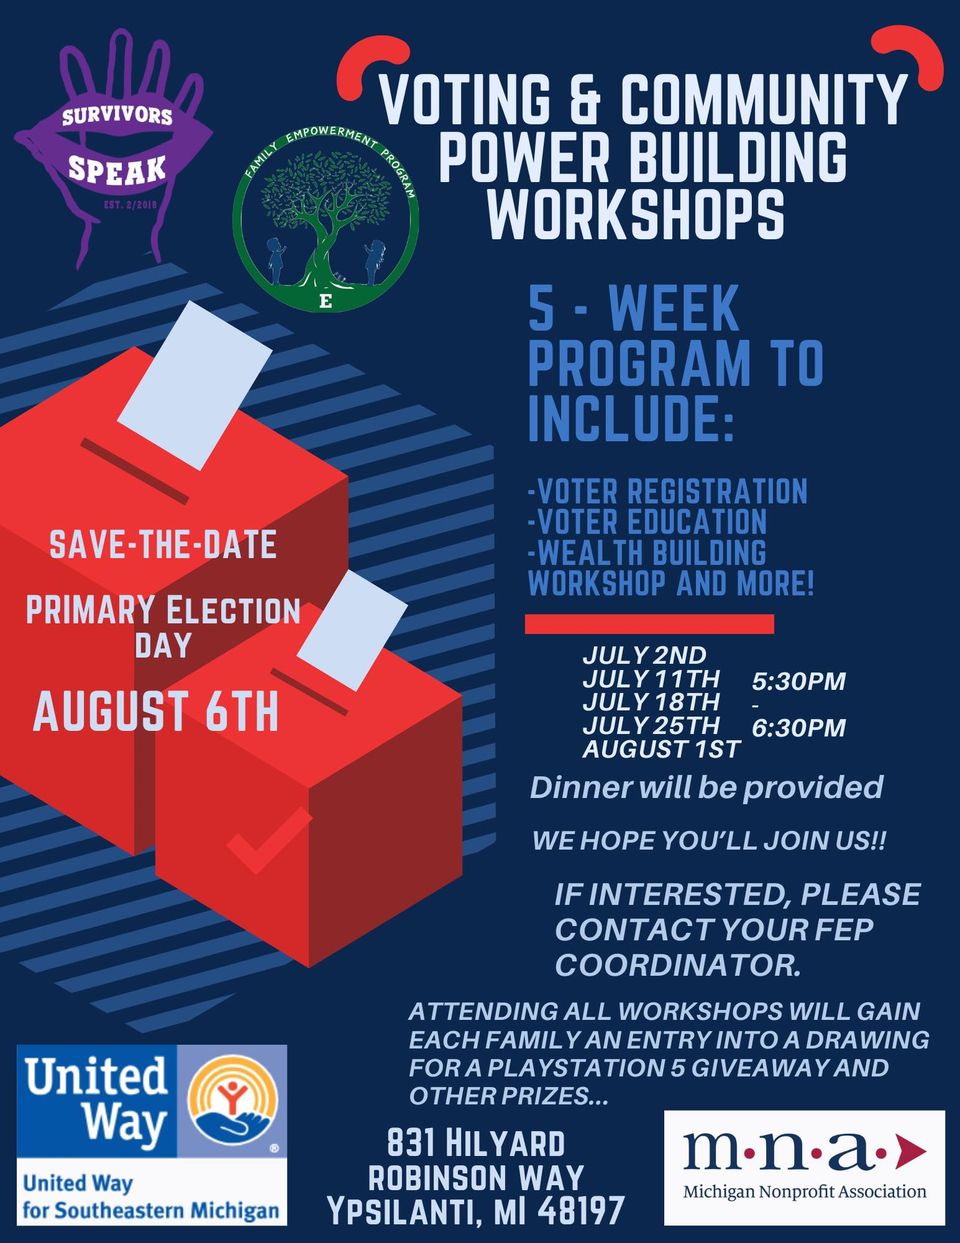 Voting & Community Power Building Workshops, Part 4